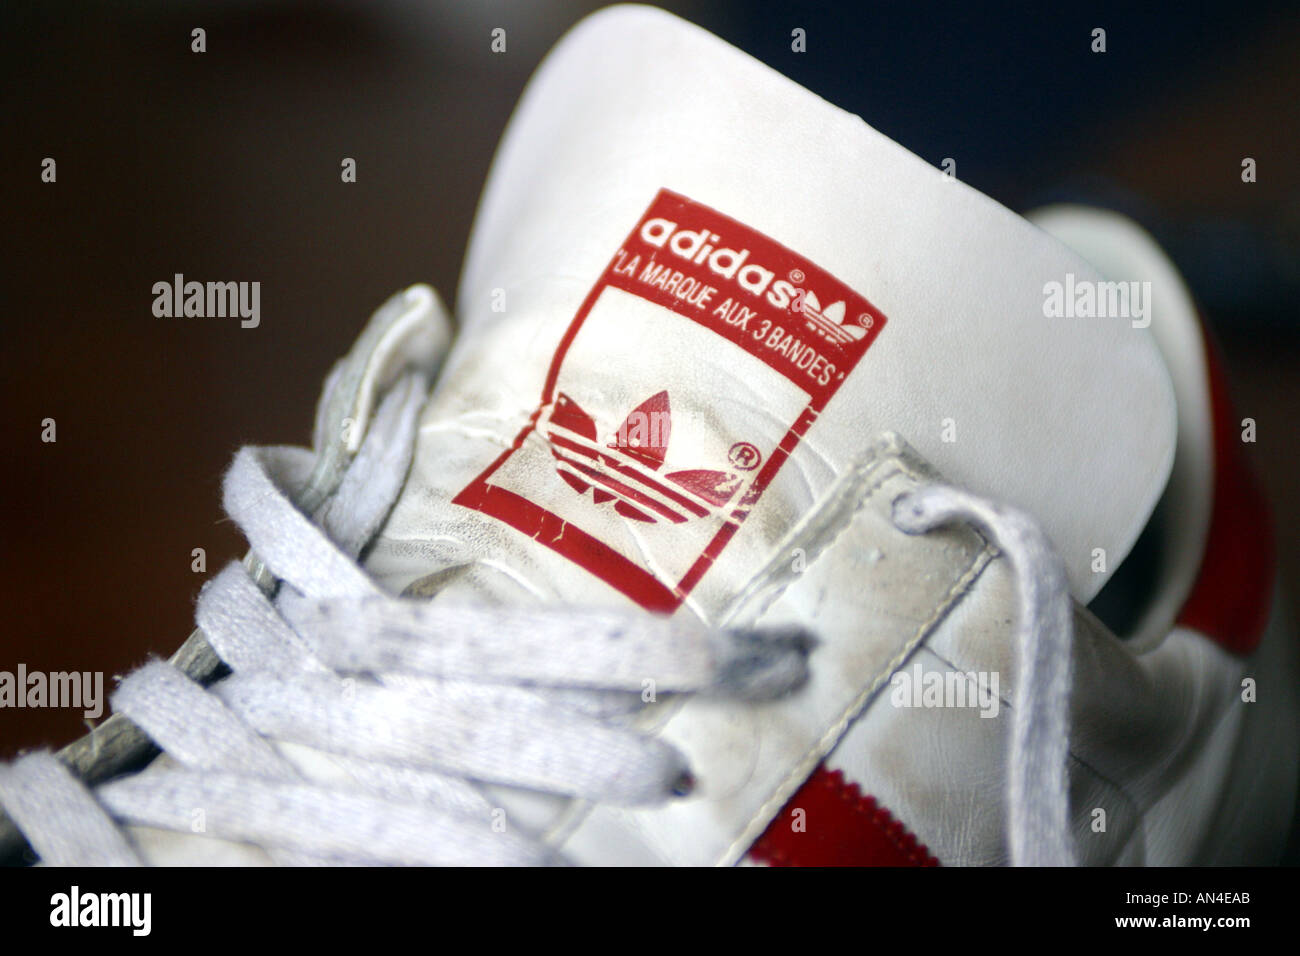 Formador de zapatillas Adidas Fotografía de stock - Alamy